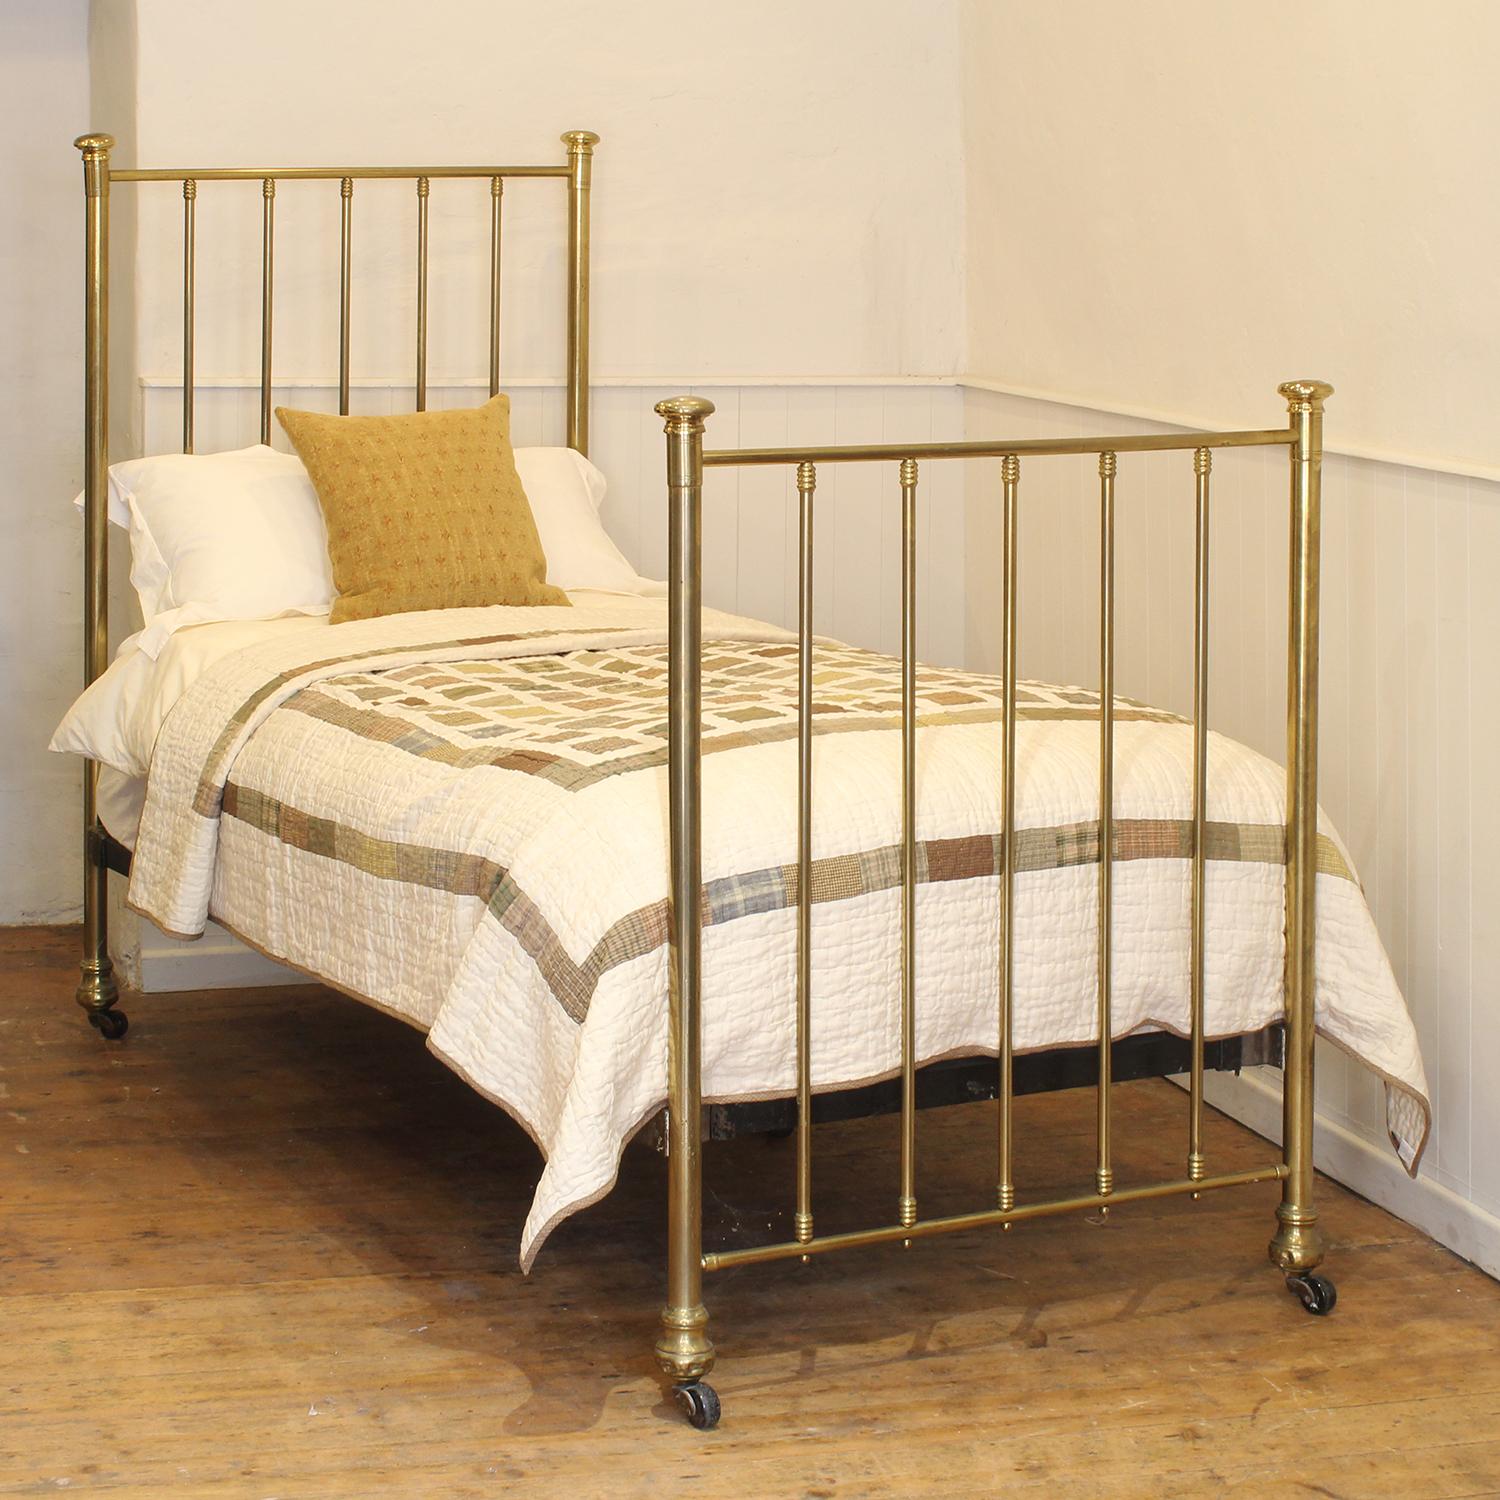 Ein einfaches Edwardianisches Einzelbett aus Messing und Eisen mit schöner Patina und Messingkappen.
Dieses Bett ist für ein britisches Standard-Einzelbett mit einer Breite von 3 Fuß und einer Länge von 6 Fuß und einer Matratze geeignet, aber auch